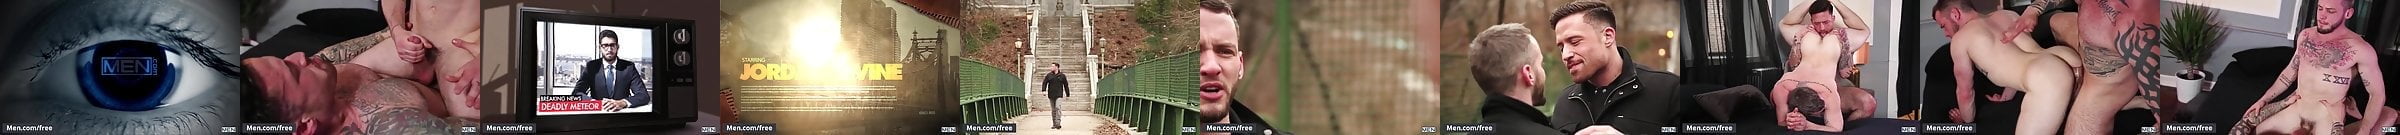 Colton Grey Free Gay Pornstar Videos 42 Xhamster